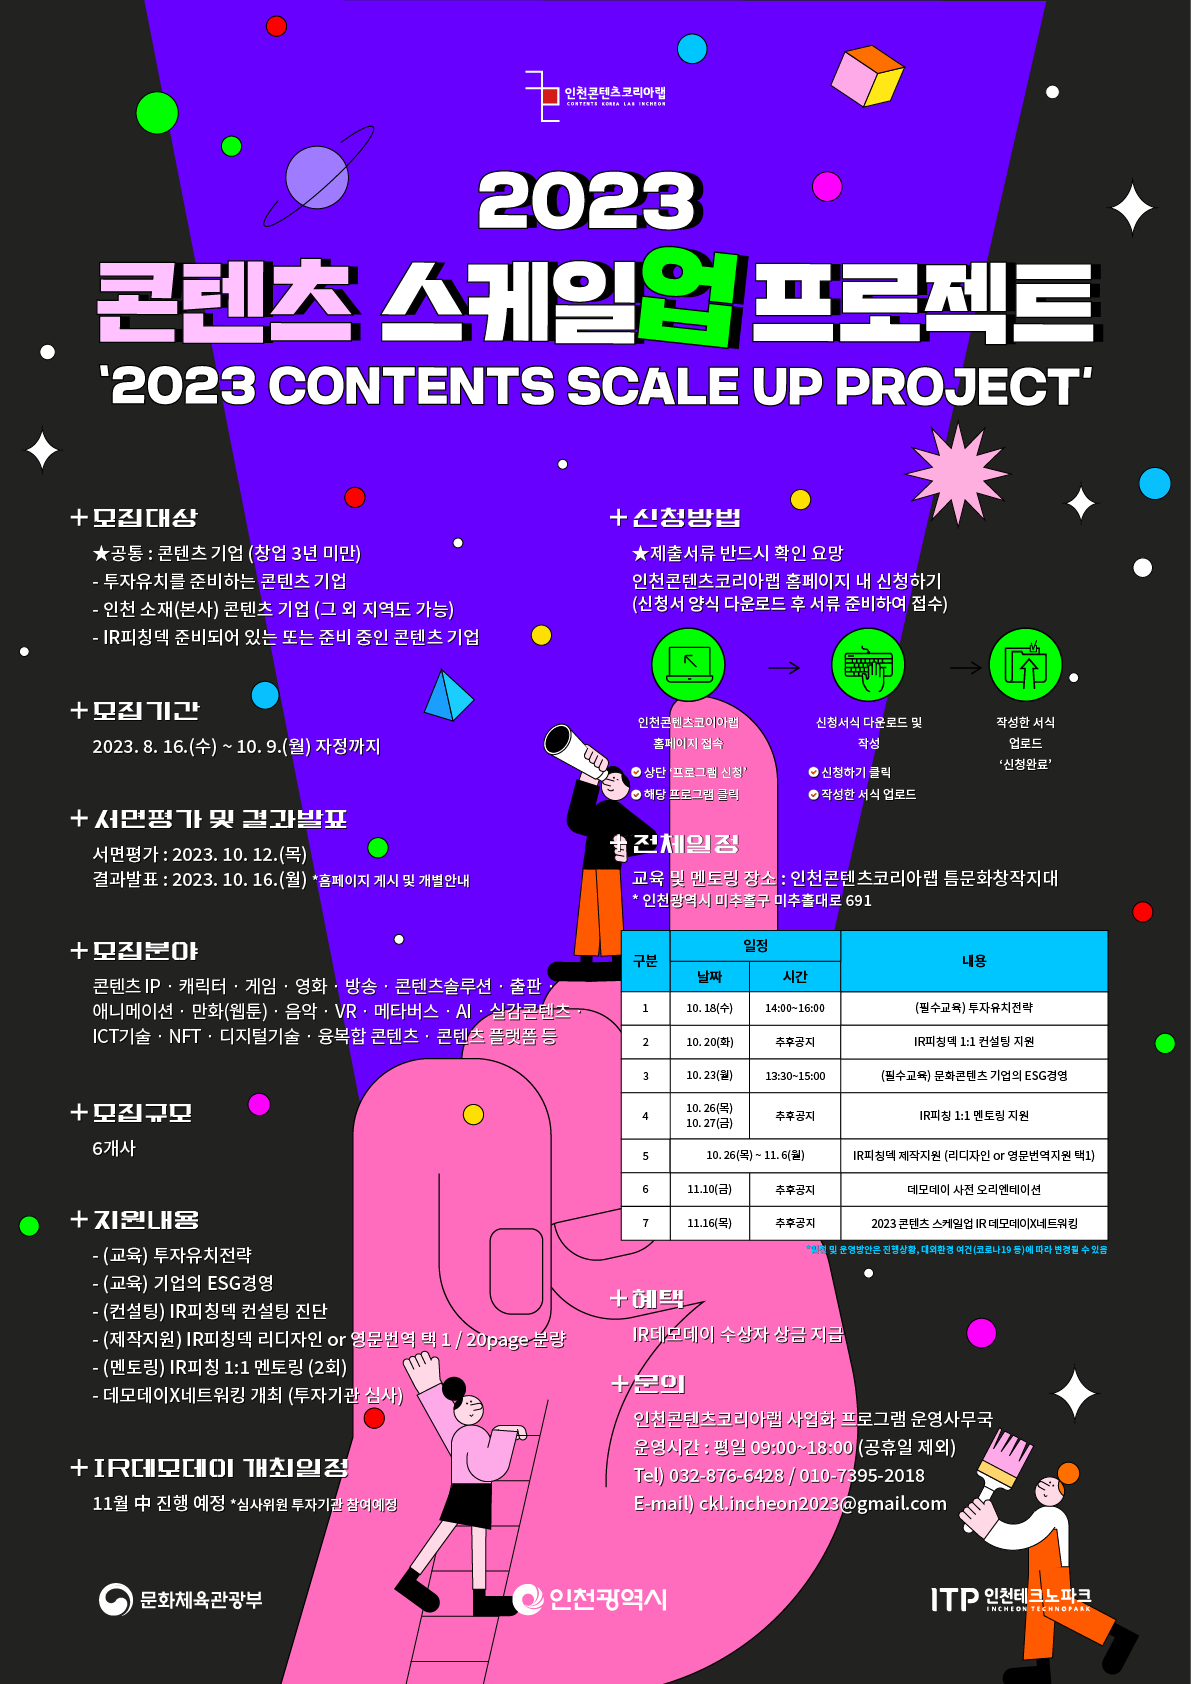 인천콘텐츠코리아랩 CONTENTS KOREA LAB INCHEON. 2023 콘텐츠 스케일업 프로젝트 포트서. 상세내용 하단 참조